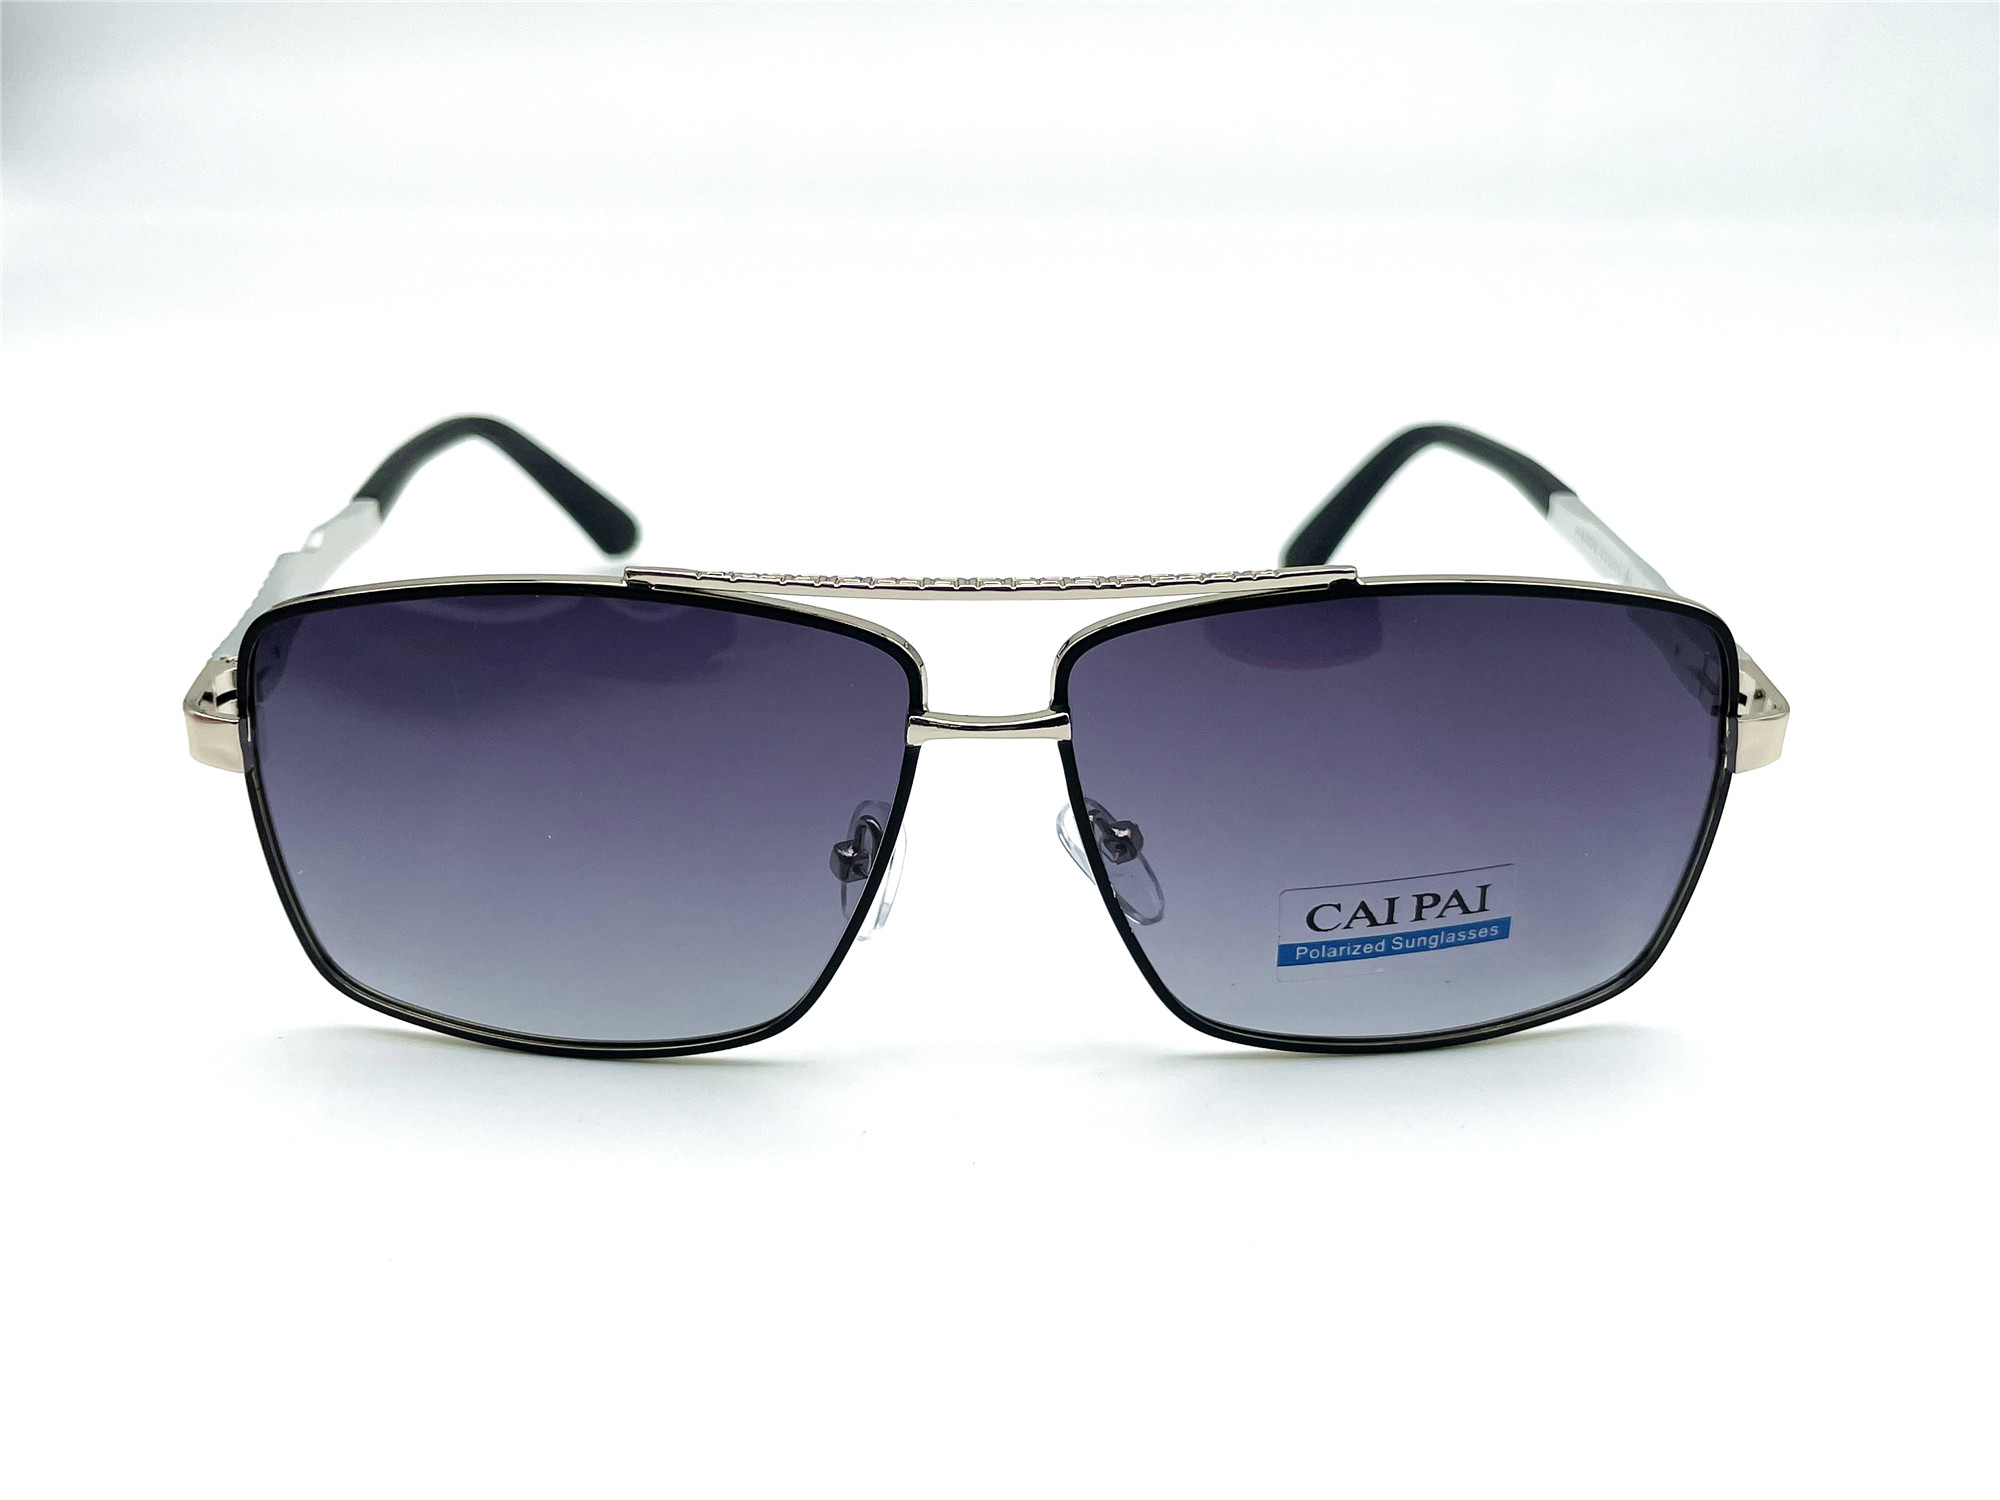  Солнцезащитные очки картинка Мужские Caipai Polarized Квадратные P4008-С4 